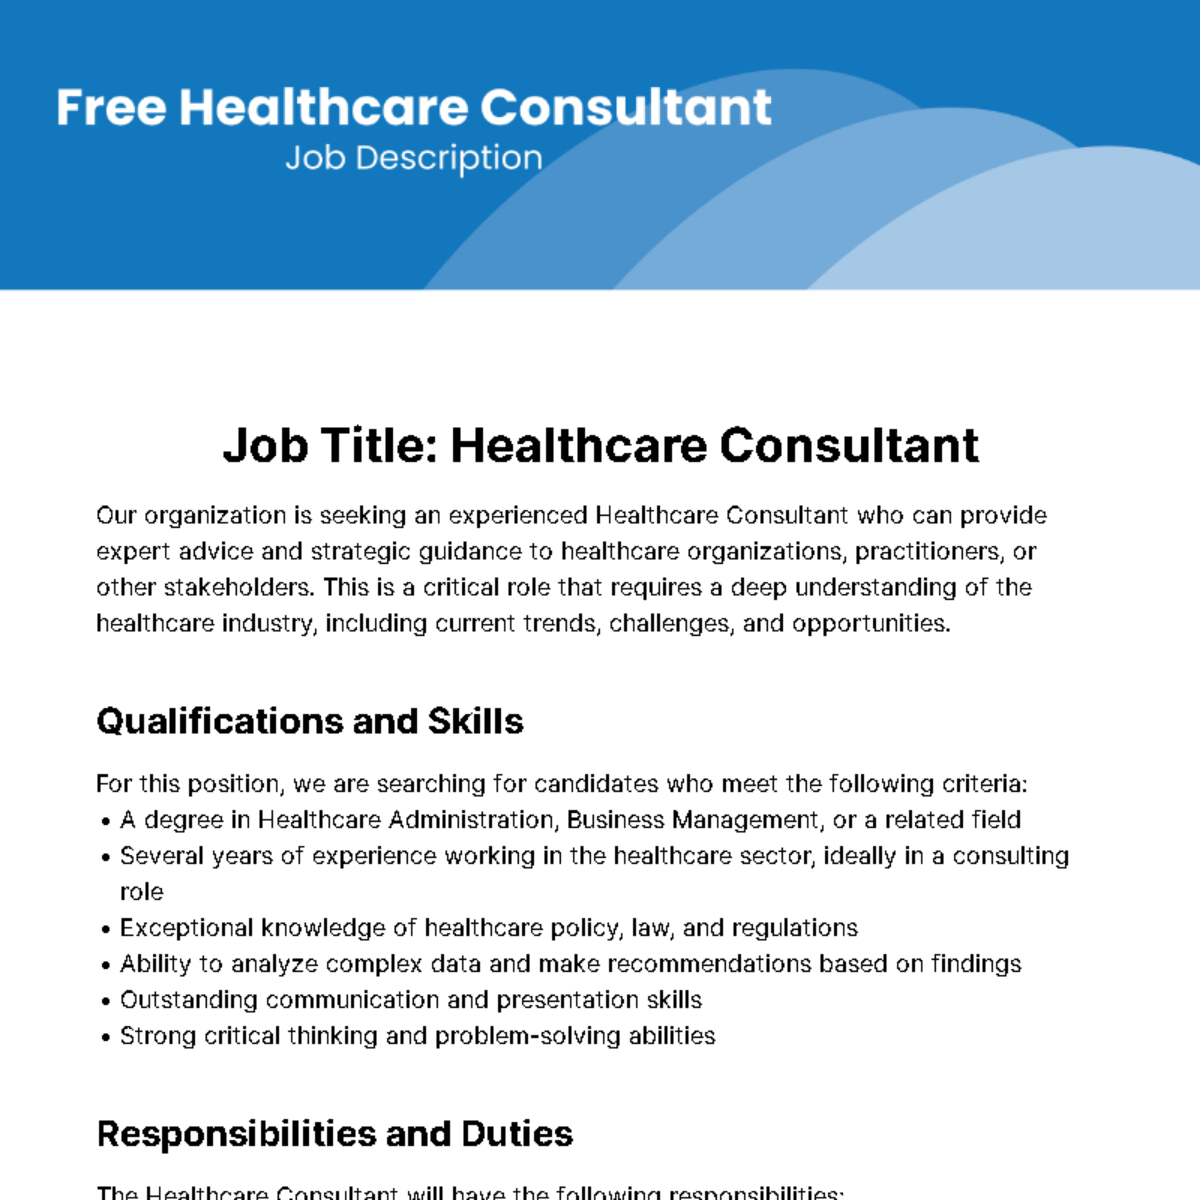 Free Healthcare Consultant Job Description Template